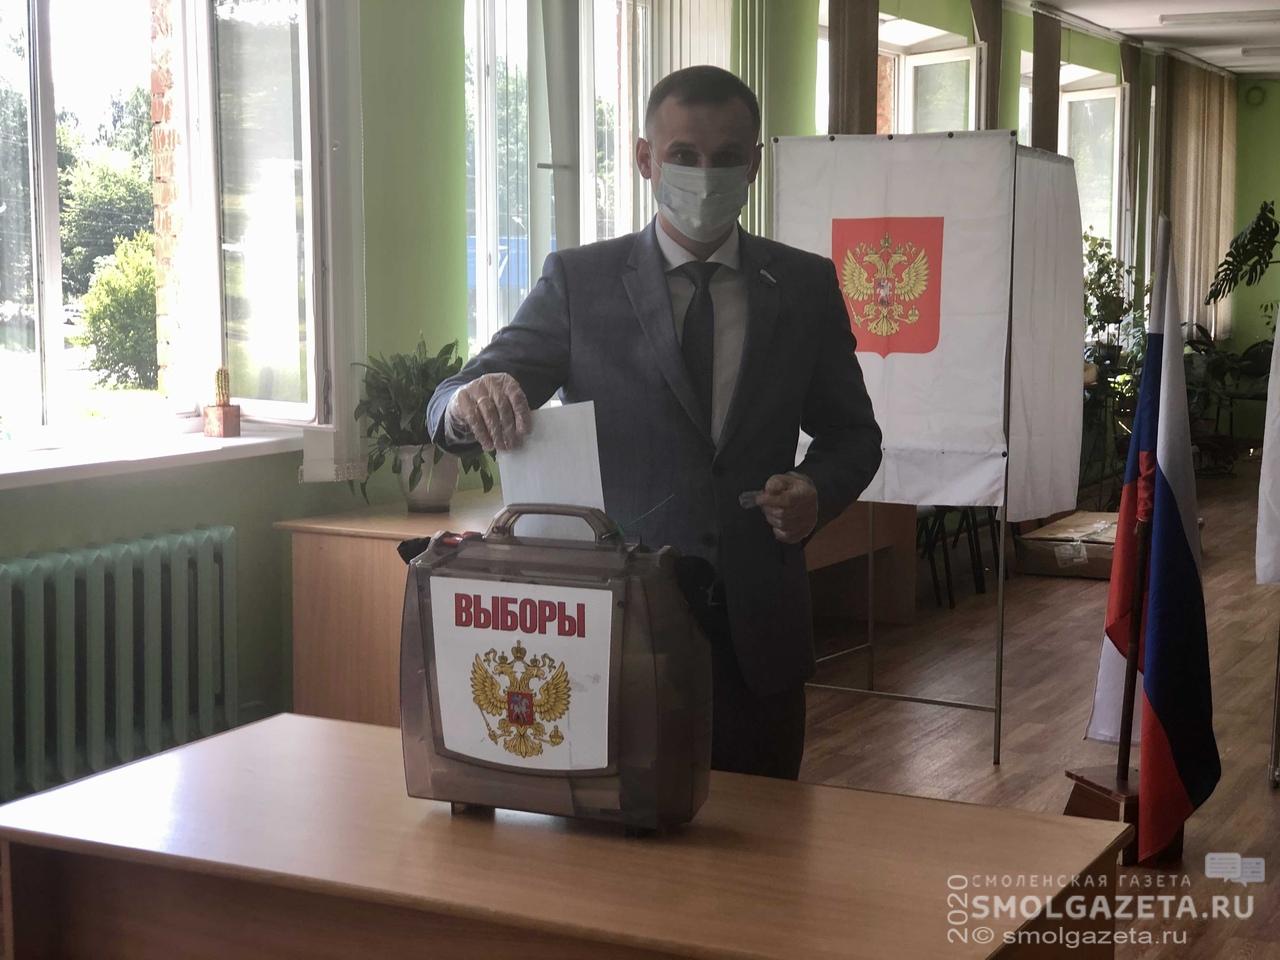 Сергей Леонов: Можно смело приходить голосовать, и не бояться заболеть коронавирусной инфекцией